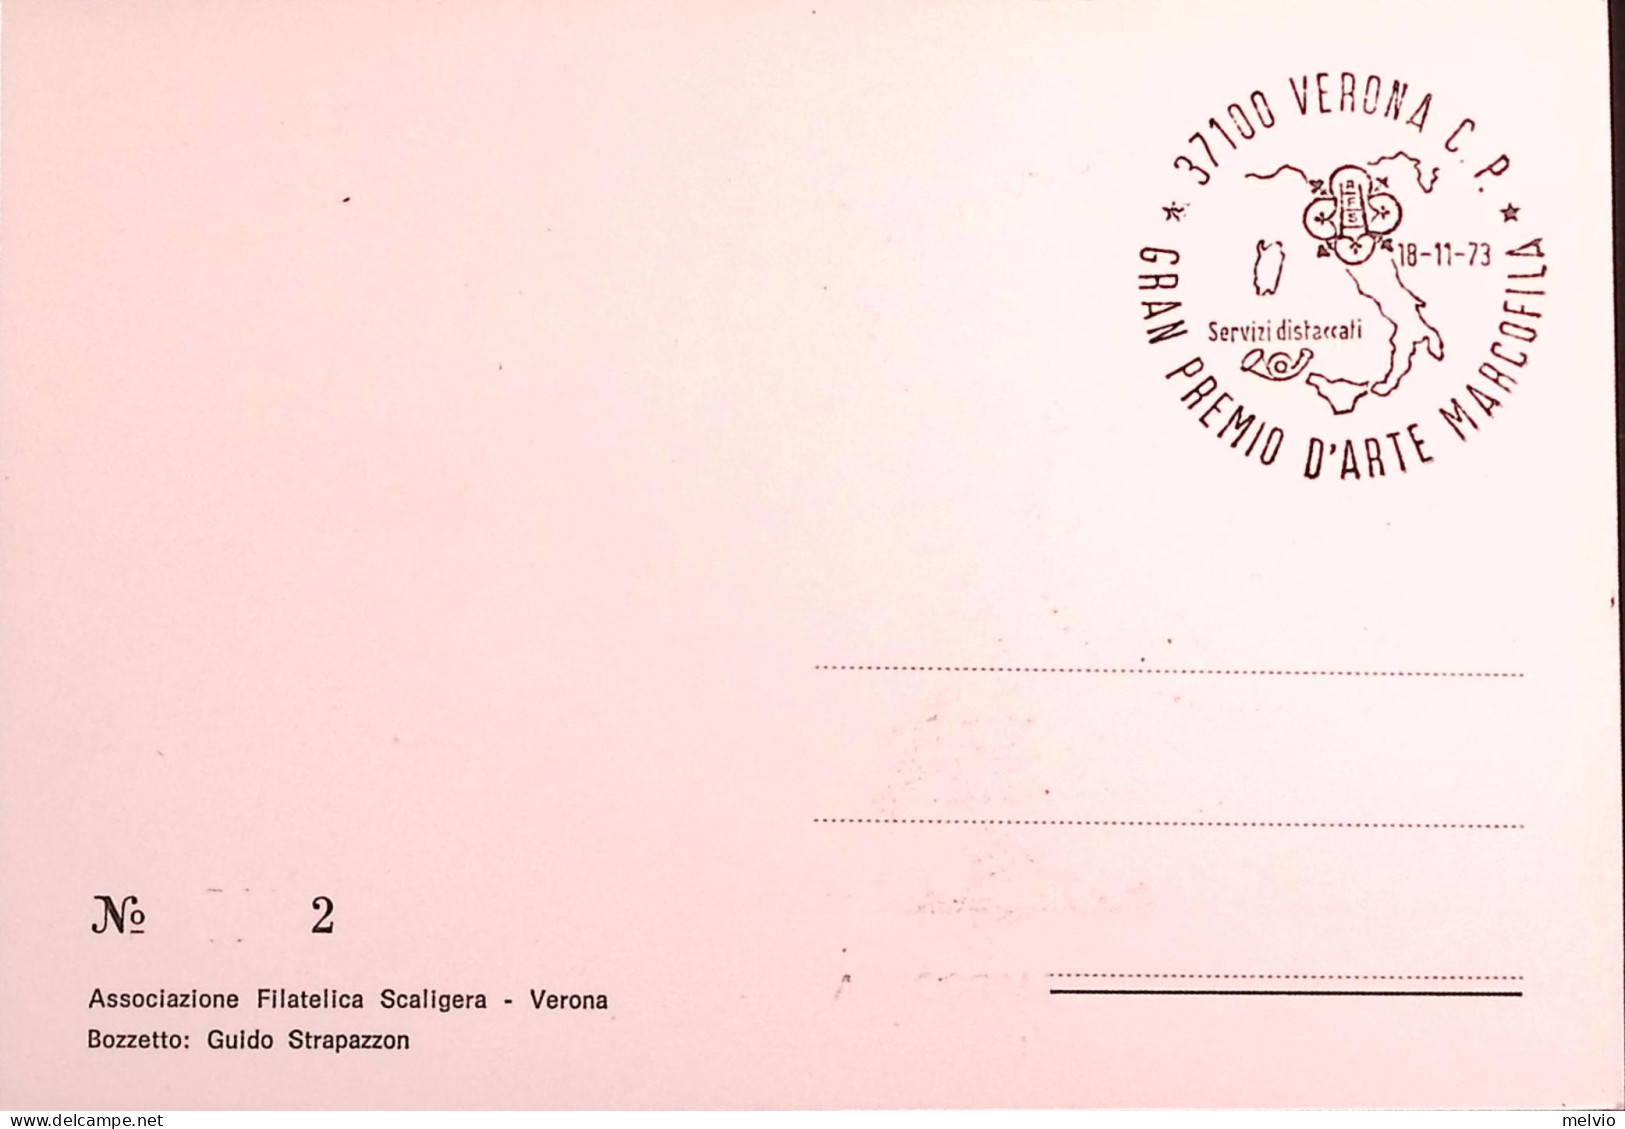 1973-VERONA GRAN PREMIO ARTE MARCOFILA (18.11) Annullo Speciale Su Cartolina - 1971-80: Marcophilia